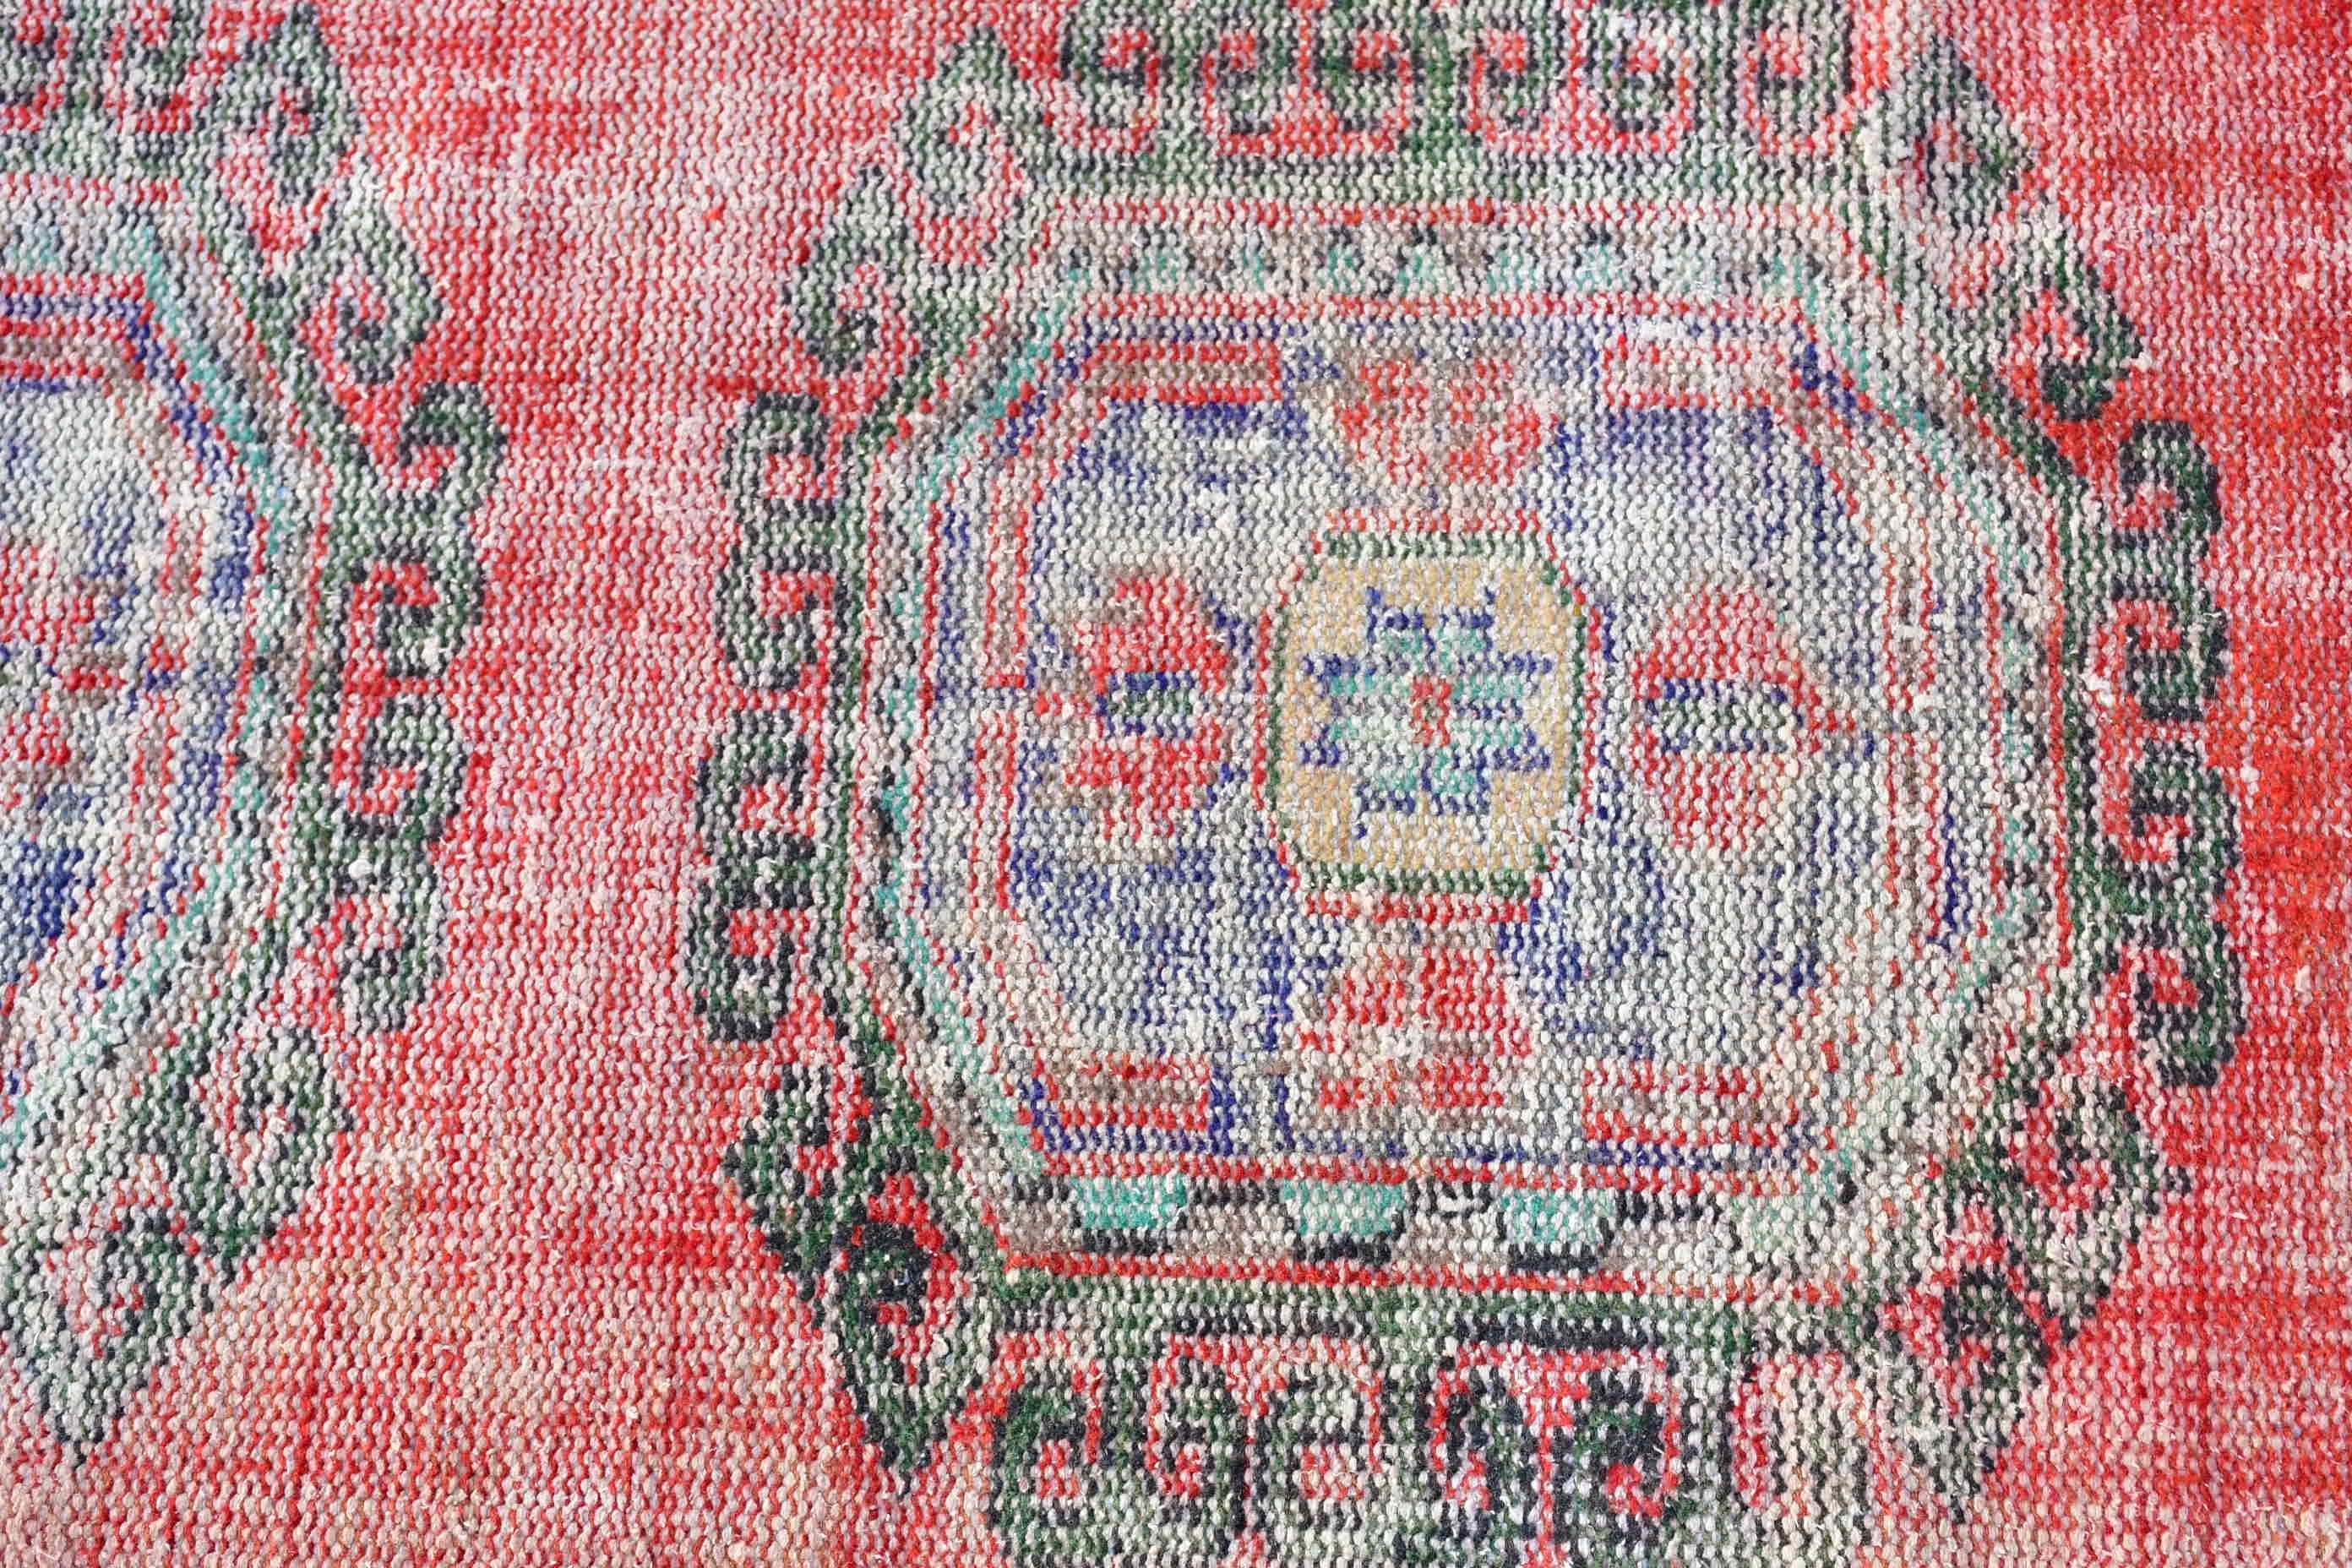 Moroccan Rugs, Red Antique Rug, Vintage Rug, Art Rug, Stair Rug, Turkish Rugs, 2.6x10.6 ft Runner Rugs, Oriental Rugs, Kitchen Rug